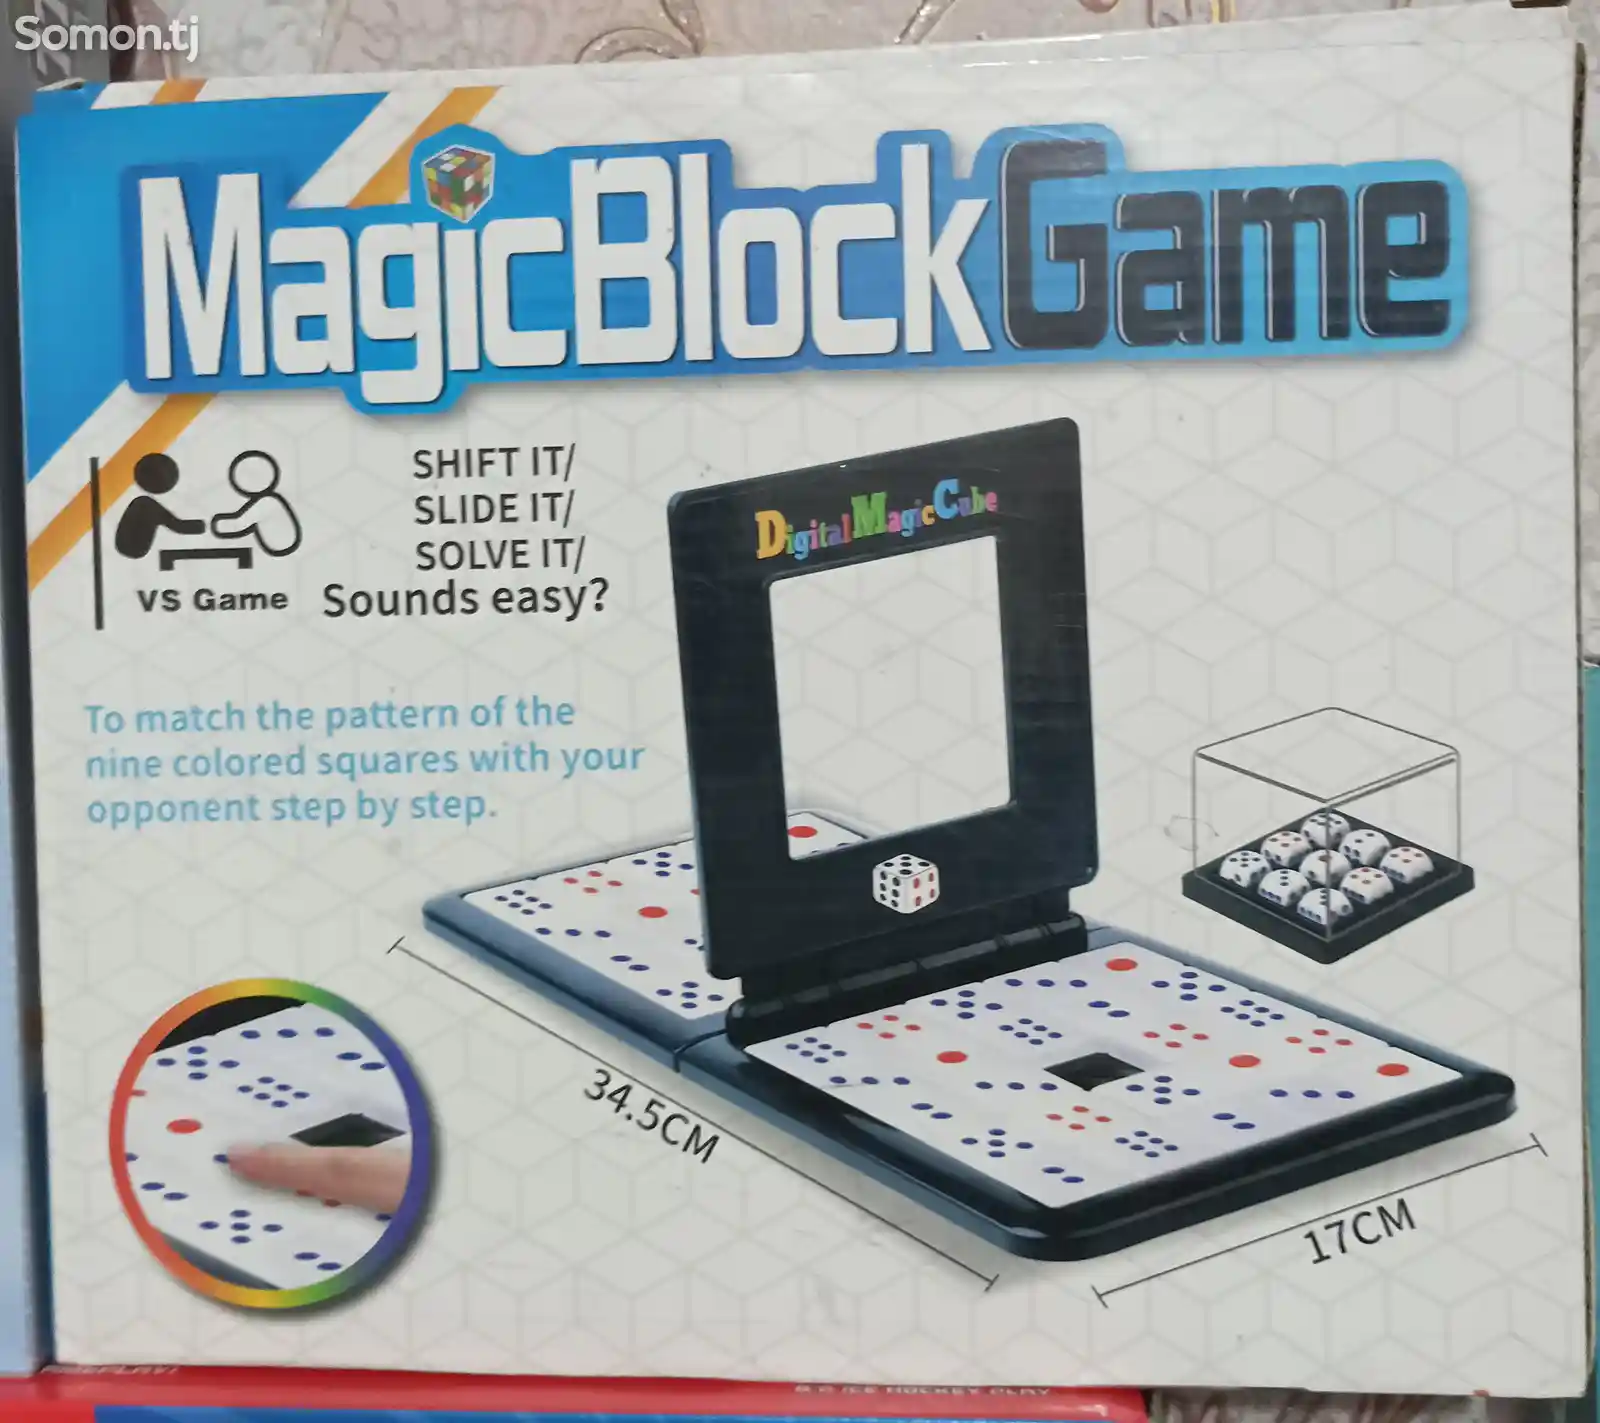 Меджик блок гейм, MagicBlockGame, мастер скорости, кто быстрее соберет-7